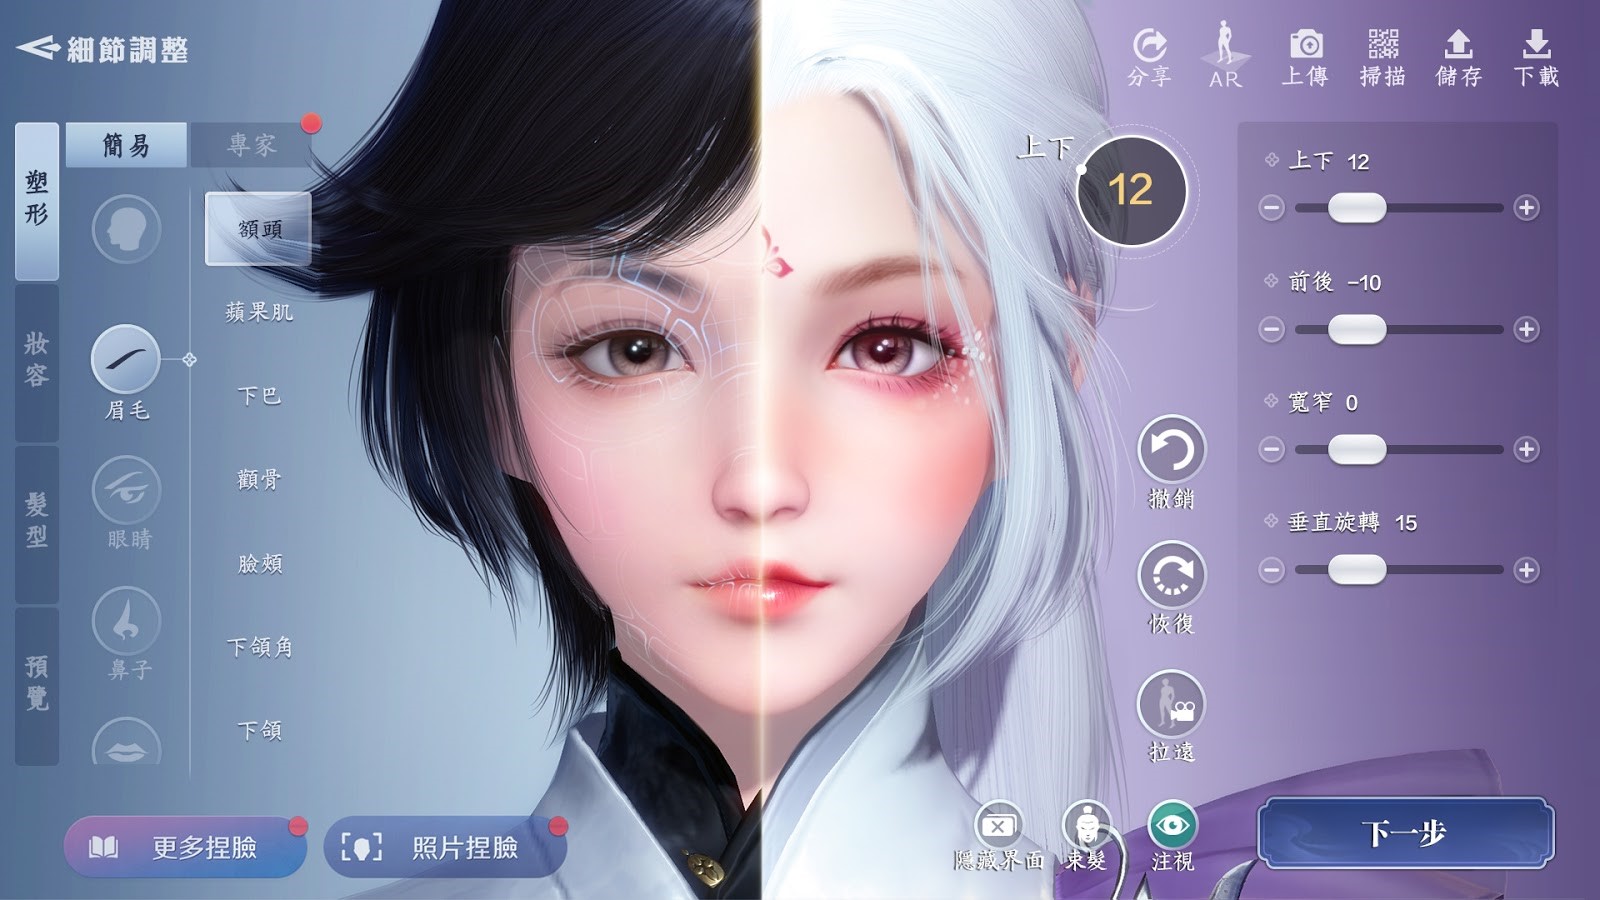 [新聞圖片1]《天涯明月刀 M》捏臉系統共有600+ 種參數讓玩家打造出專屬面容